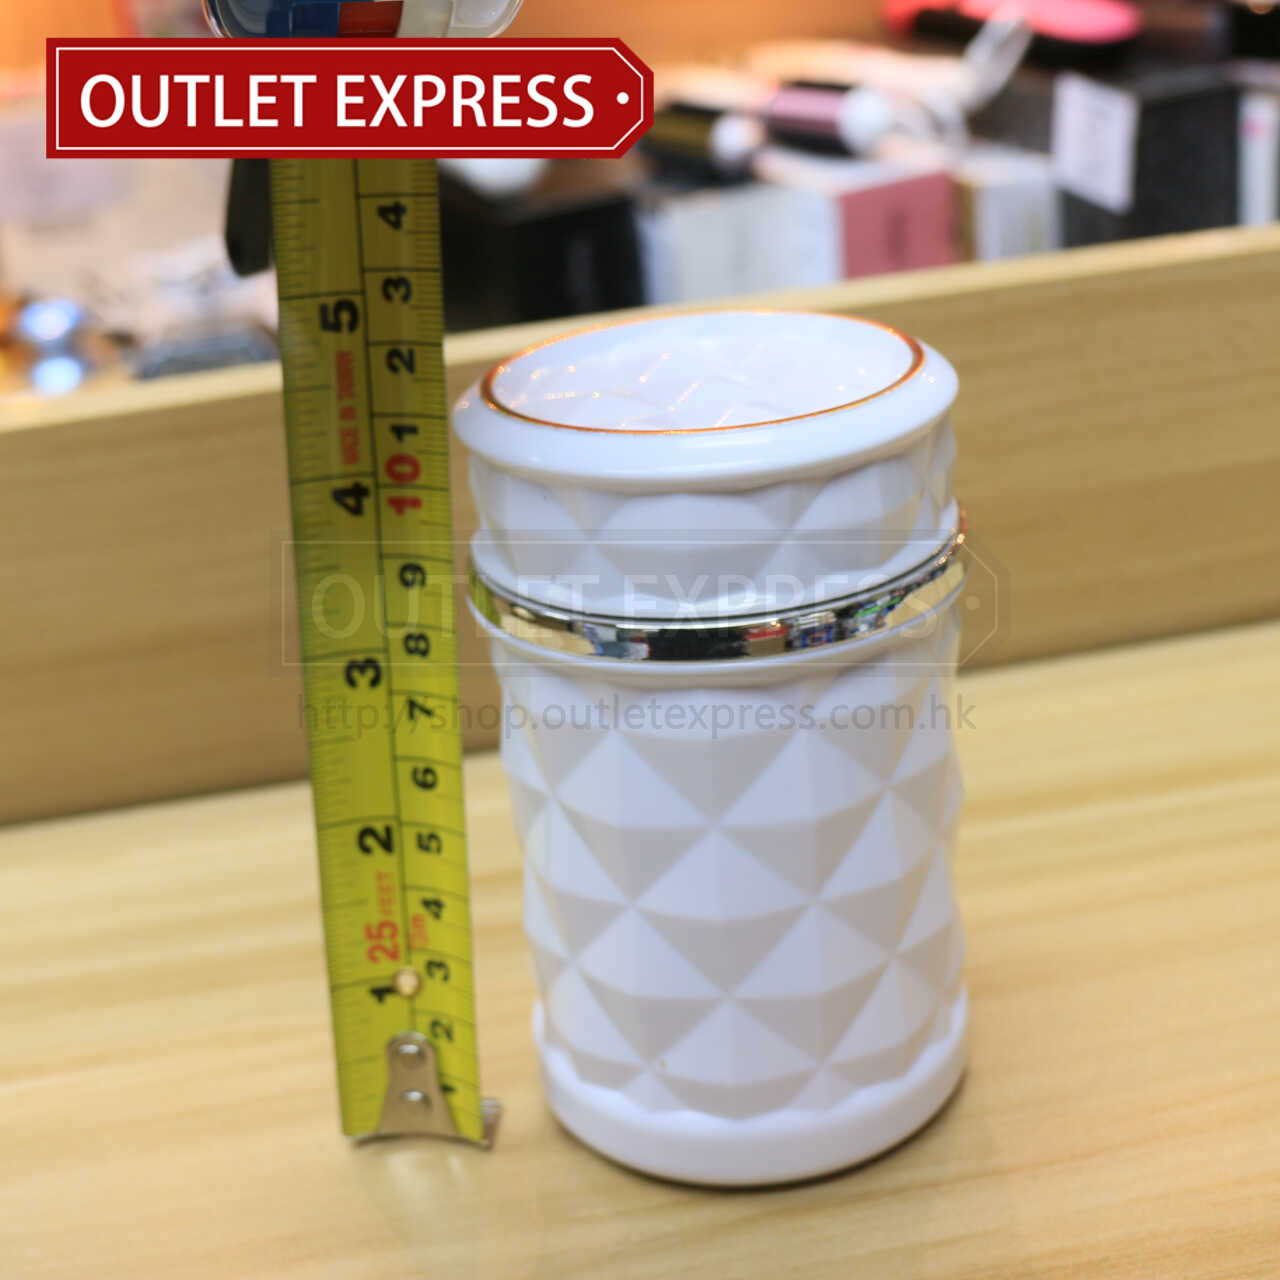 LED燈汽車煙灰缸(白色)的尺寸- Outlet Express HK生活百貨城實拍相片